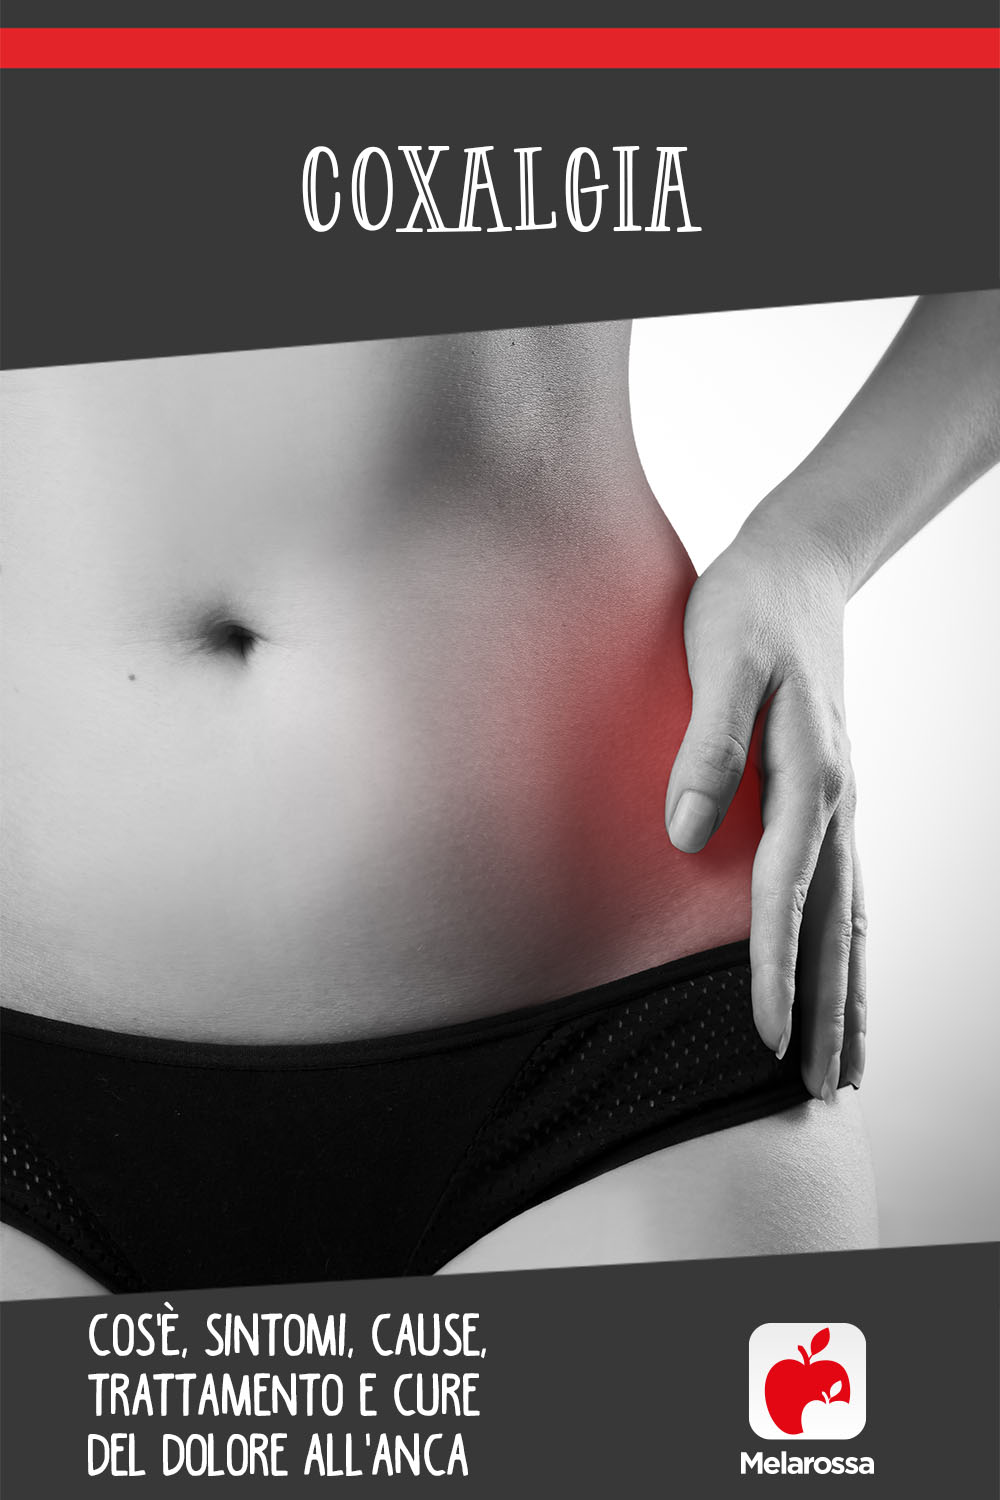 coxalgia o dolore all'anca: cos'è, sintomi, cause e cure 